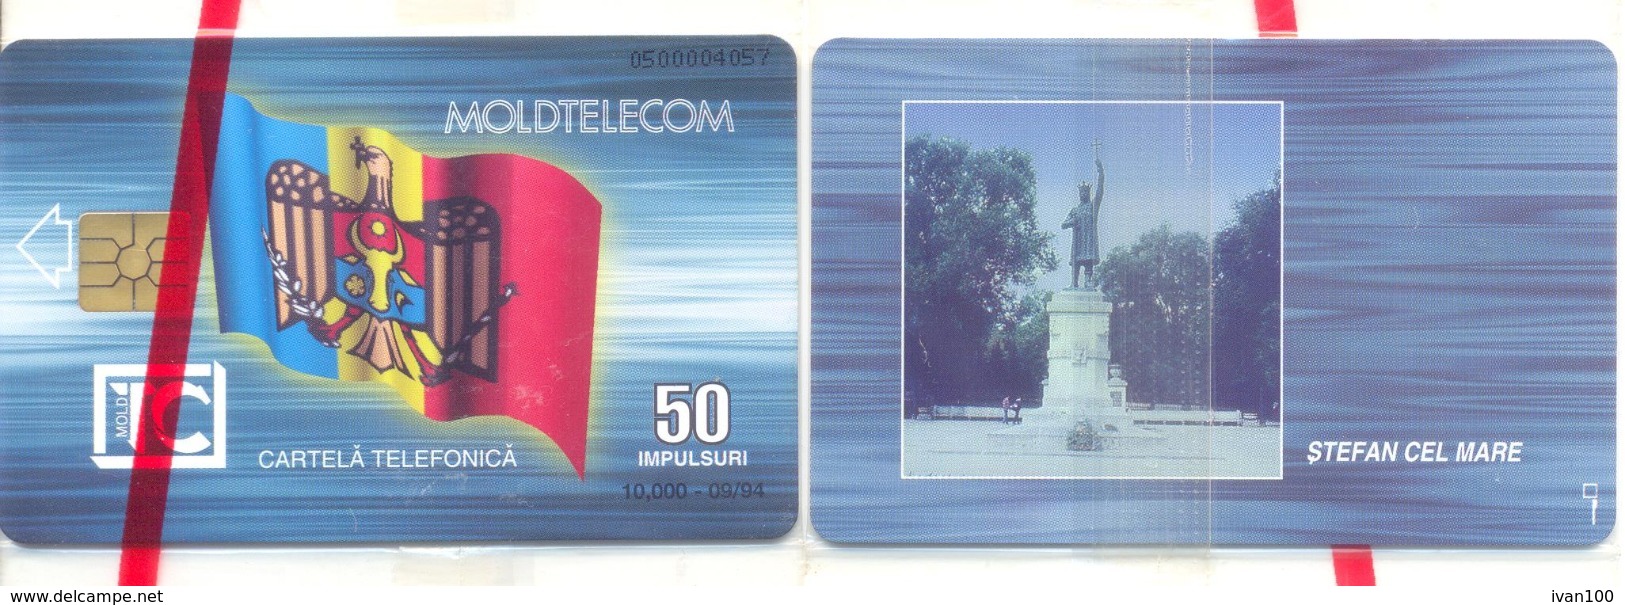 1994. Moldova - CHIP - 50 IMP, 09/1994, RR BLISTER - Moldavia